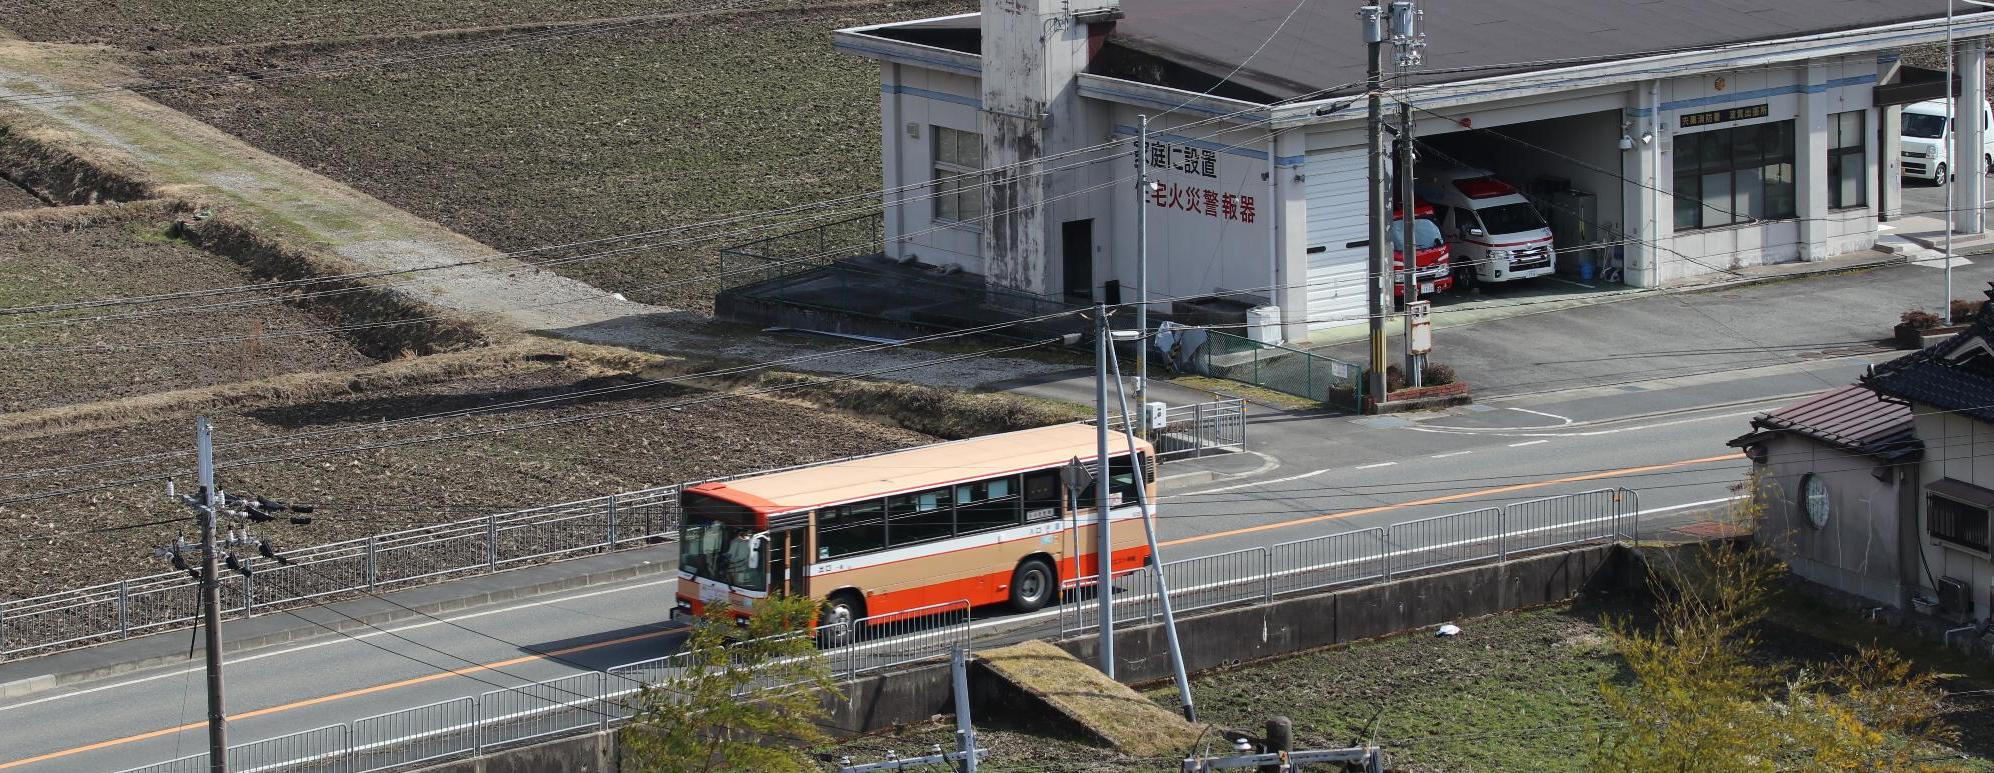 神姫バスが波賀町安賀の宍粟消防署波賀出張所前を鳥取方面へ向かって通過している写真